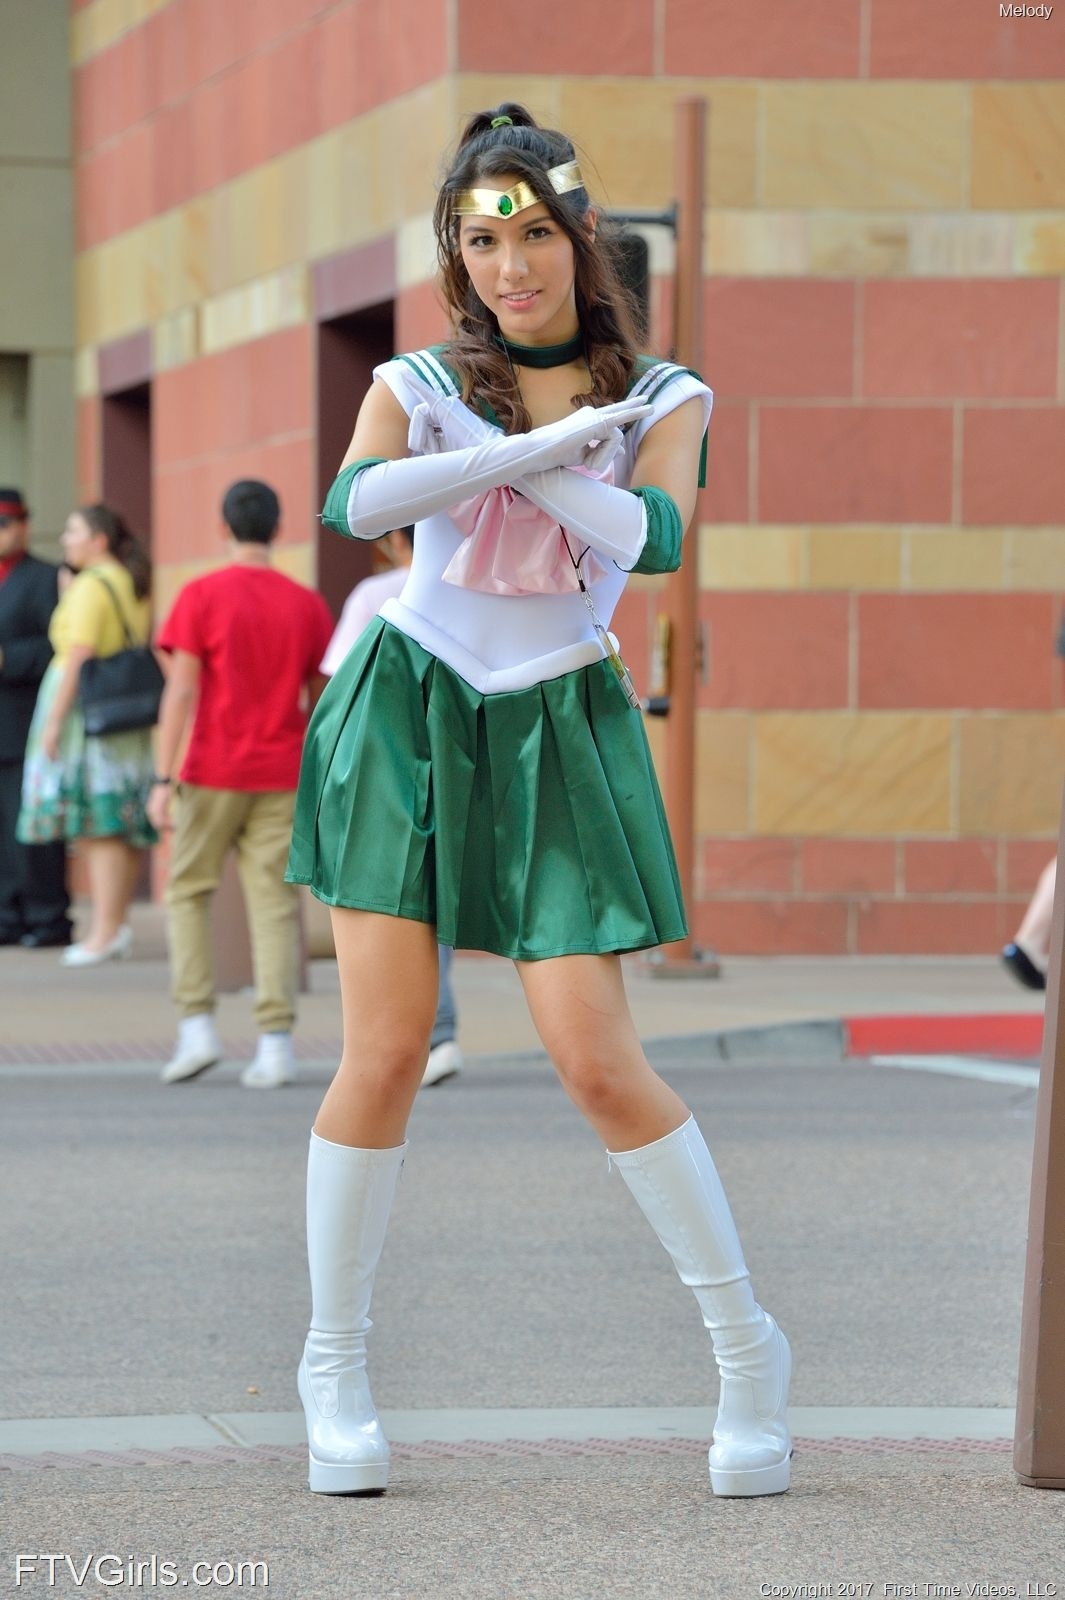 Melody Wylde as Sailor Jupiter 36